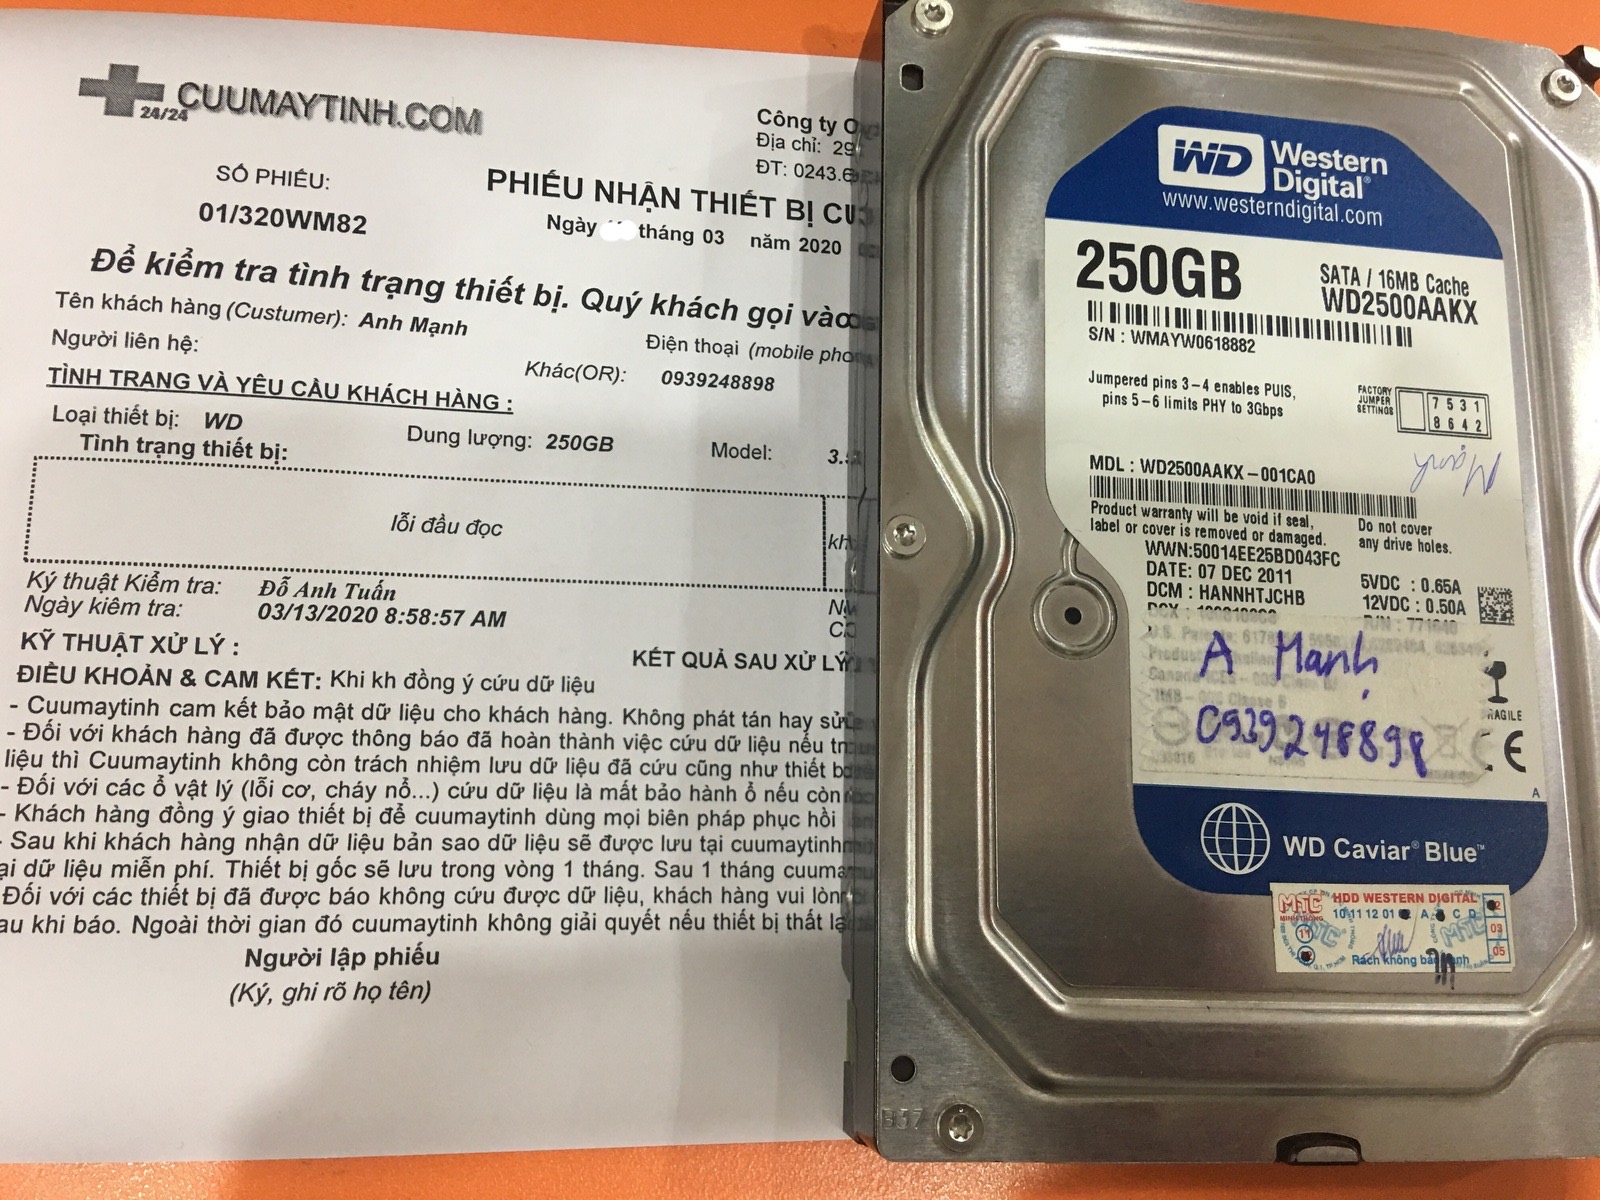 Khôi phục dữ liệu ổ cứng Western 250GB lỗi đầu đọc 18/03/2020 - cuumaytinh